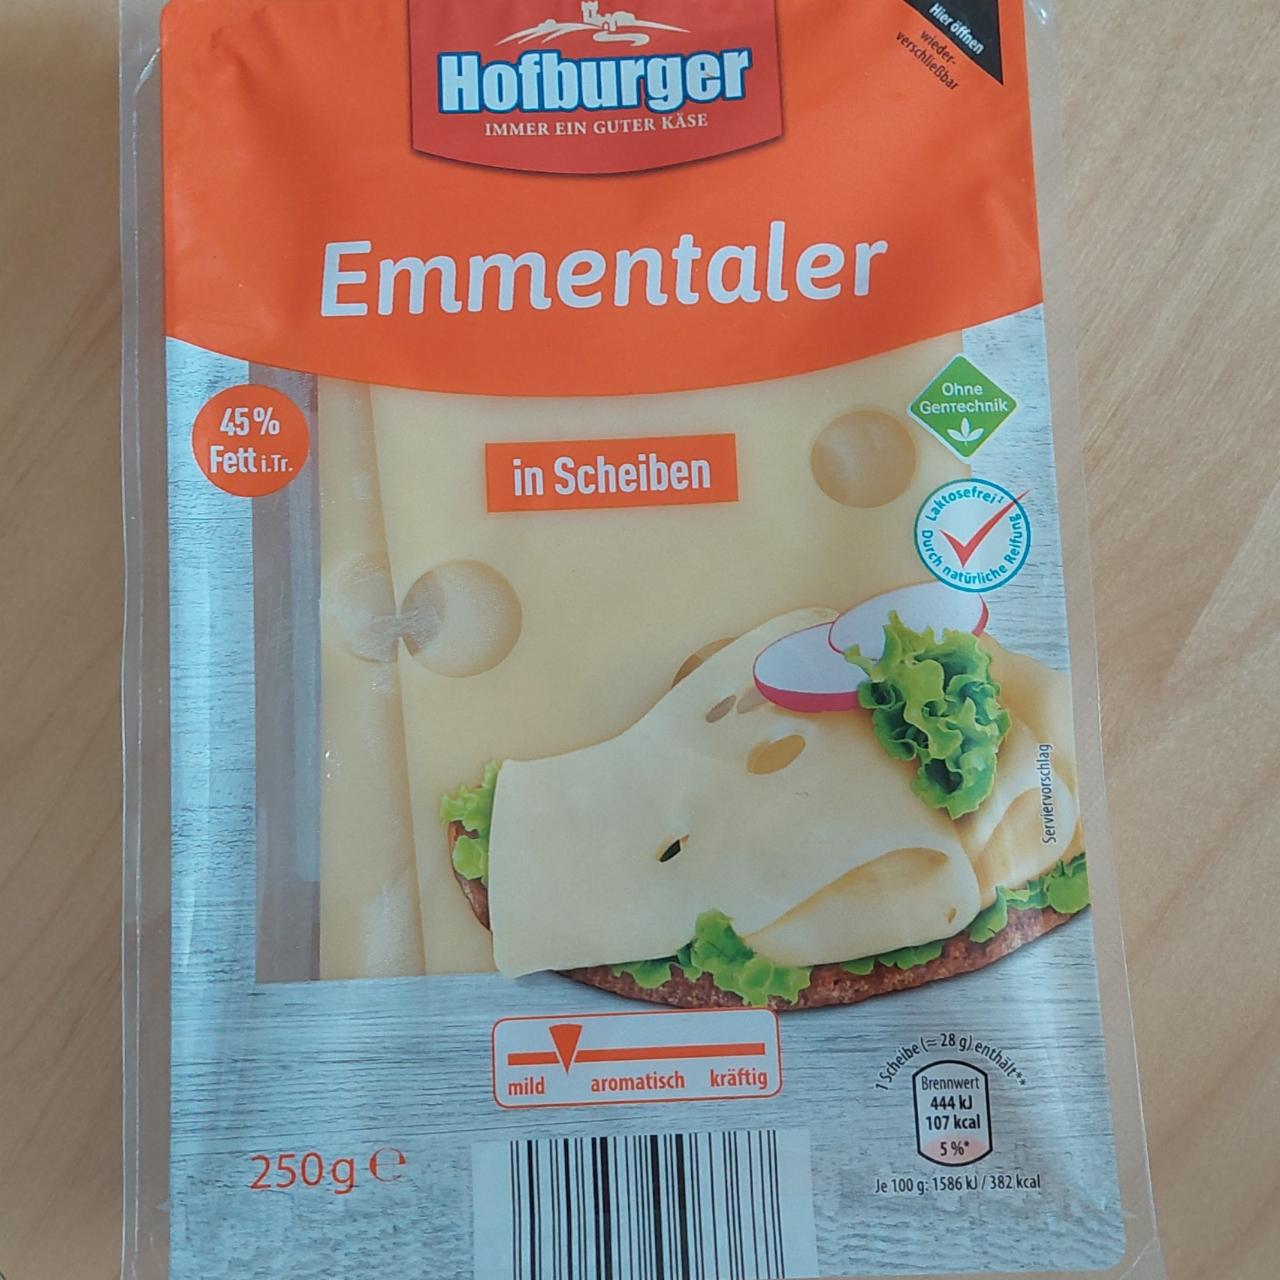 Fotografie - Emmentaler in Scheiben Hofburger